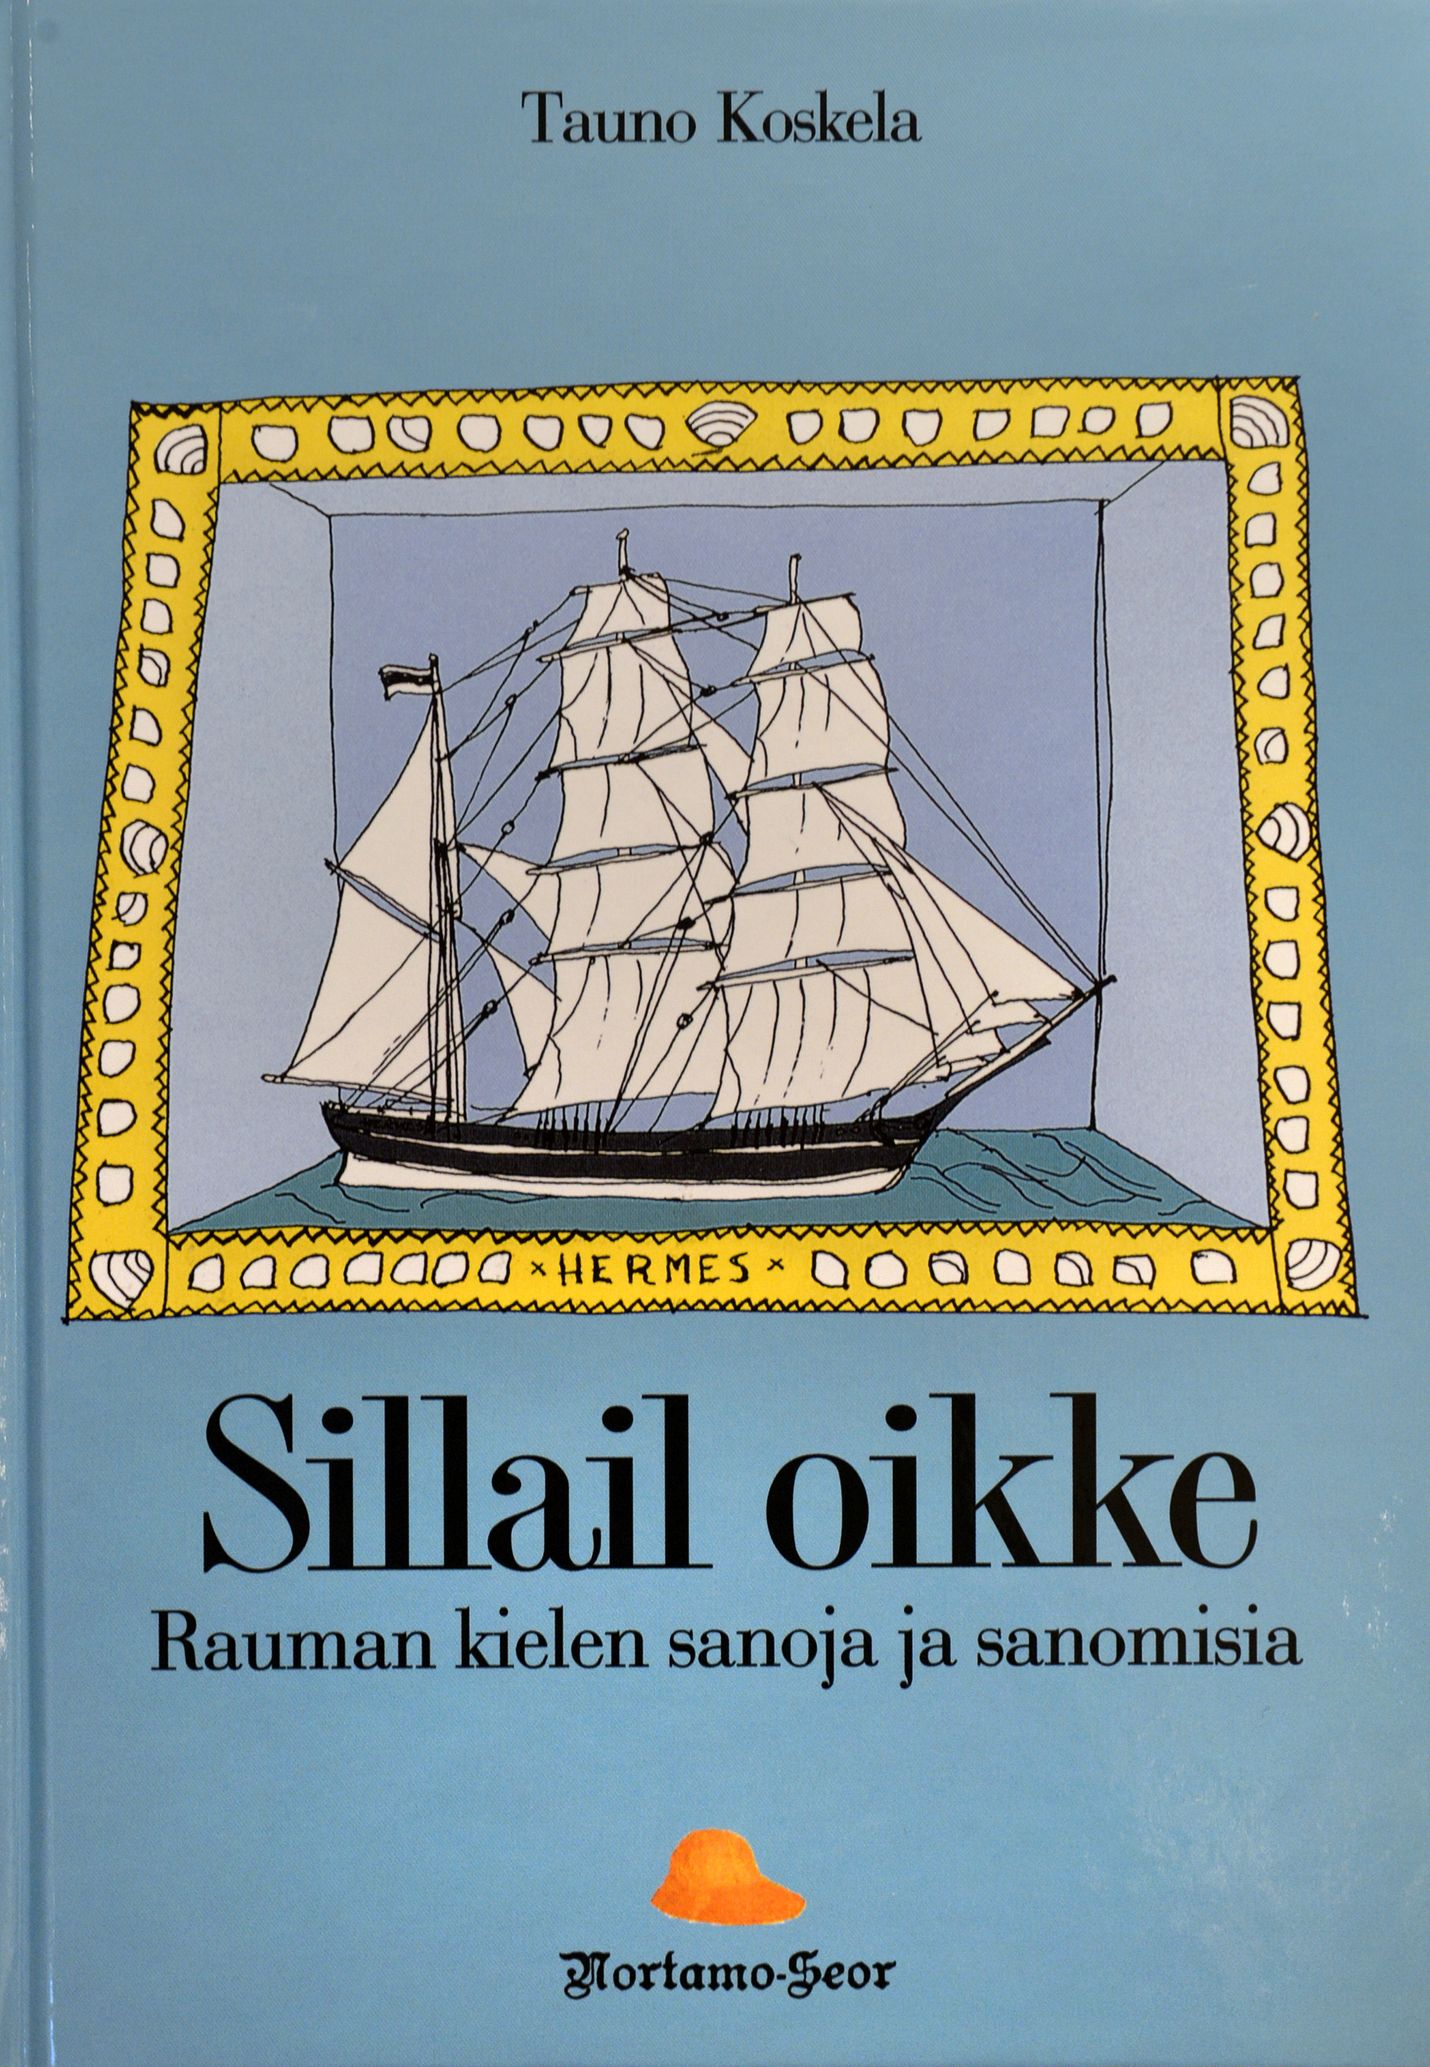 Rauman kielen sanakirjasta e-kirja